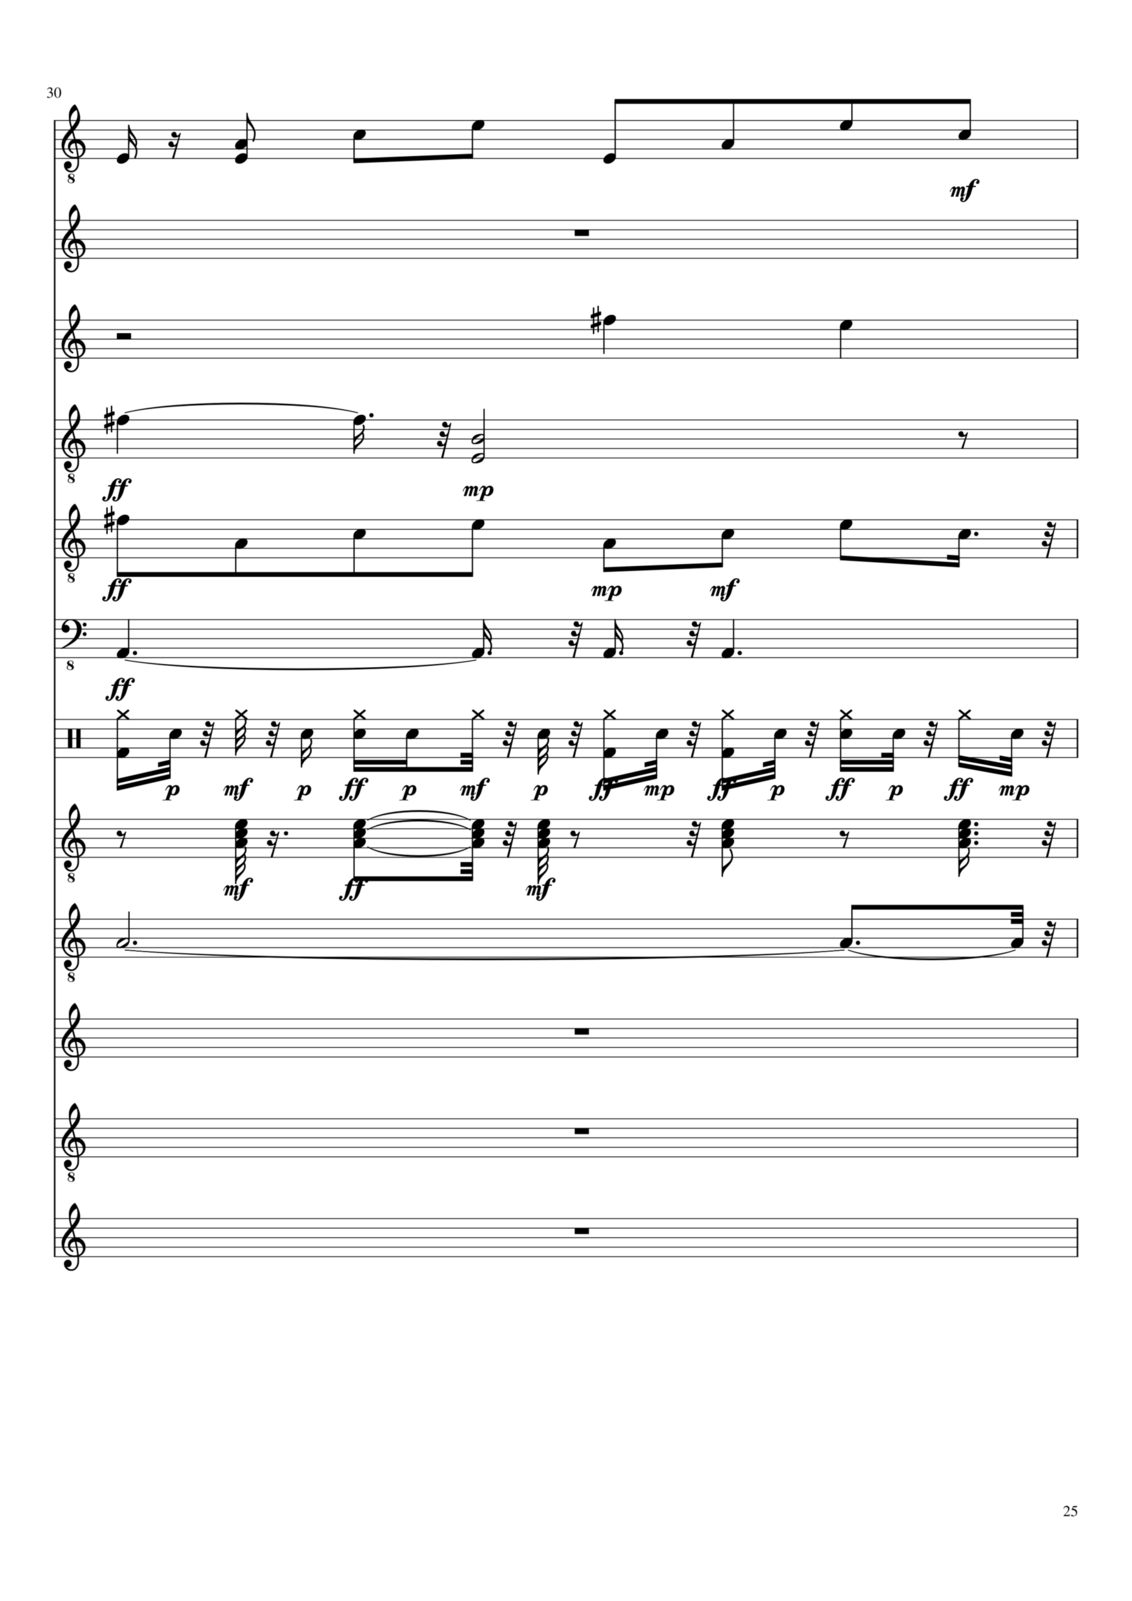 Vechnaya prizrachnaya vstrechnaya slide, Image 7